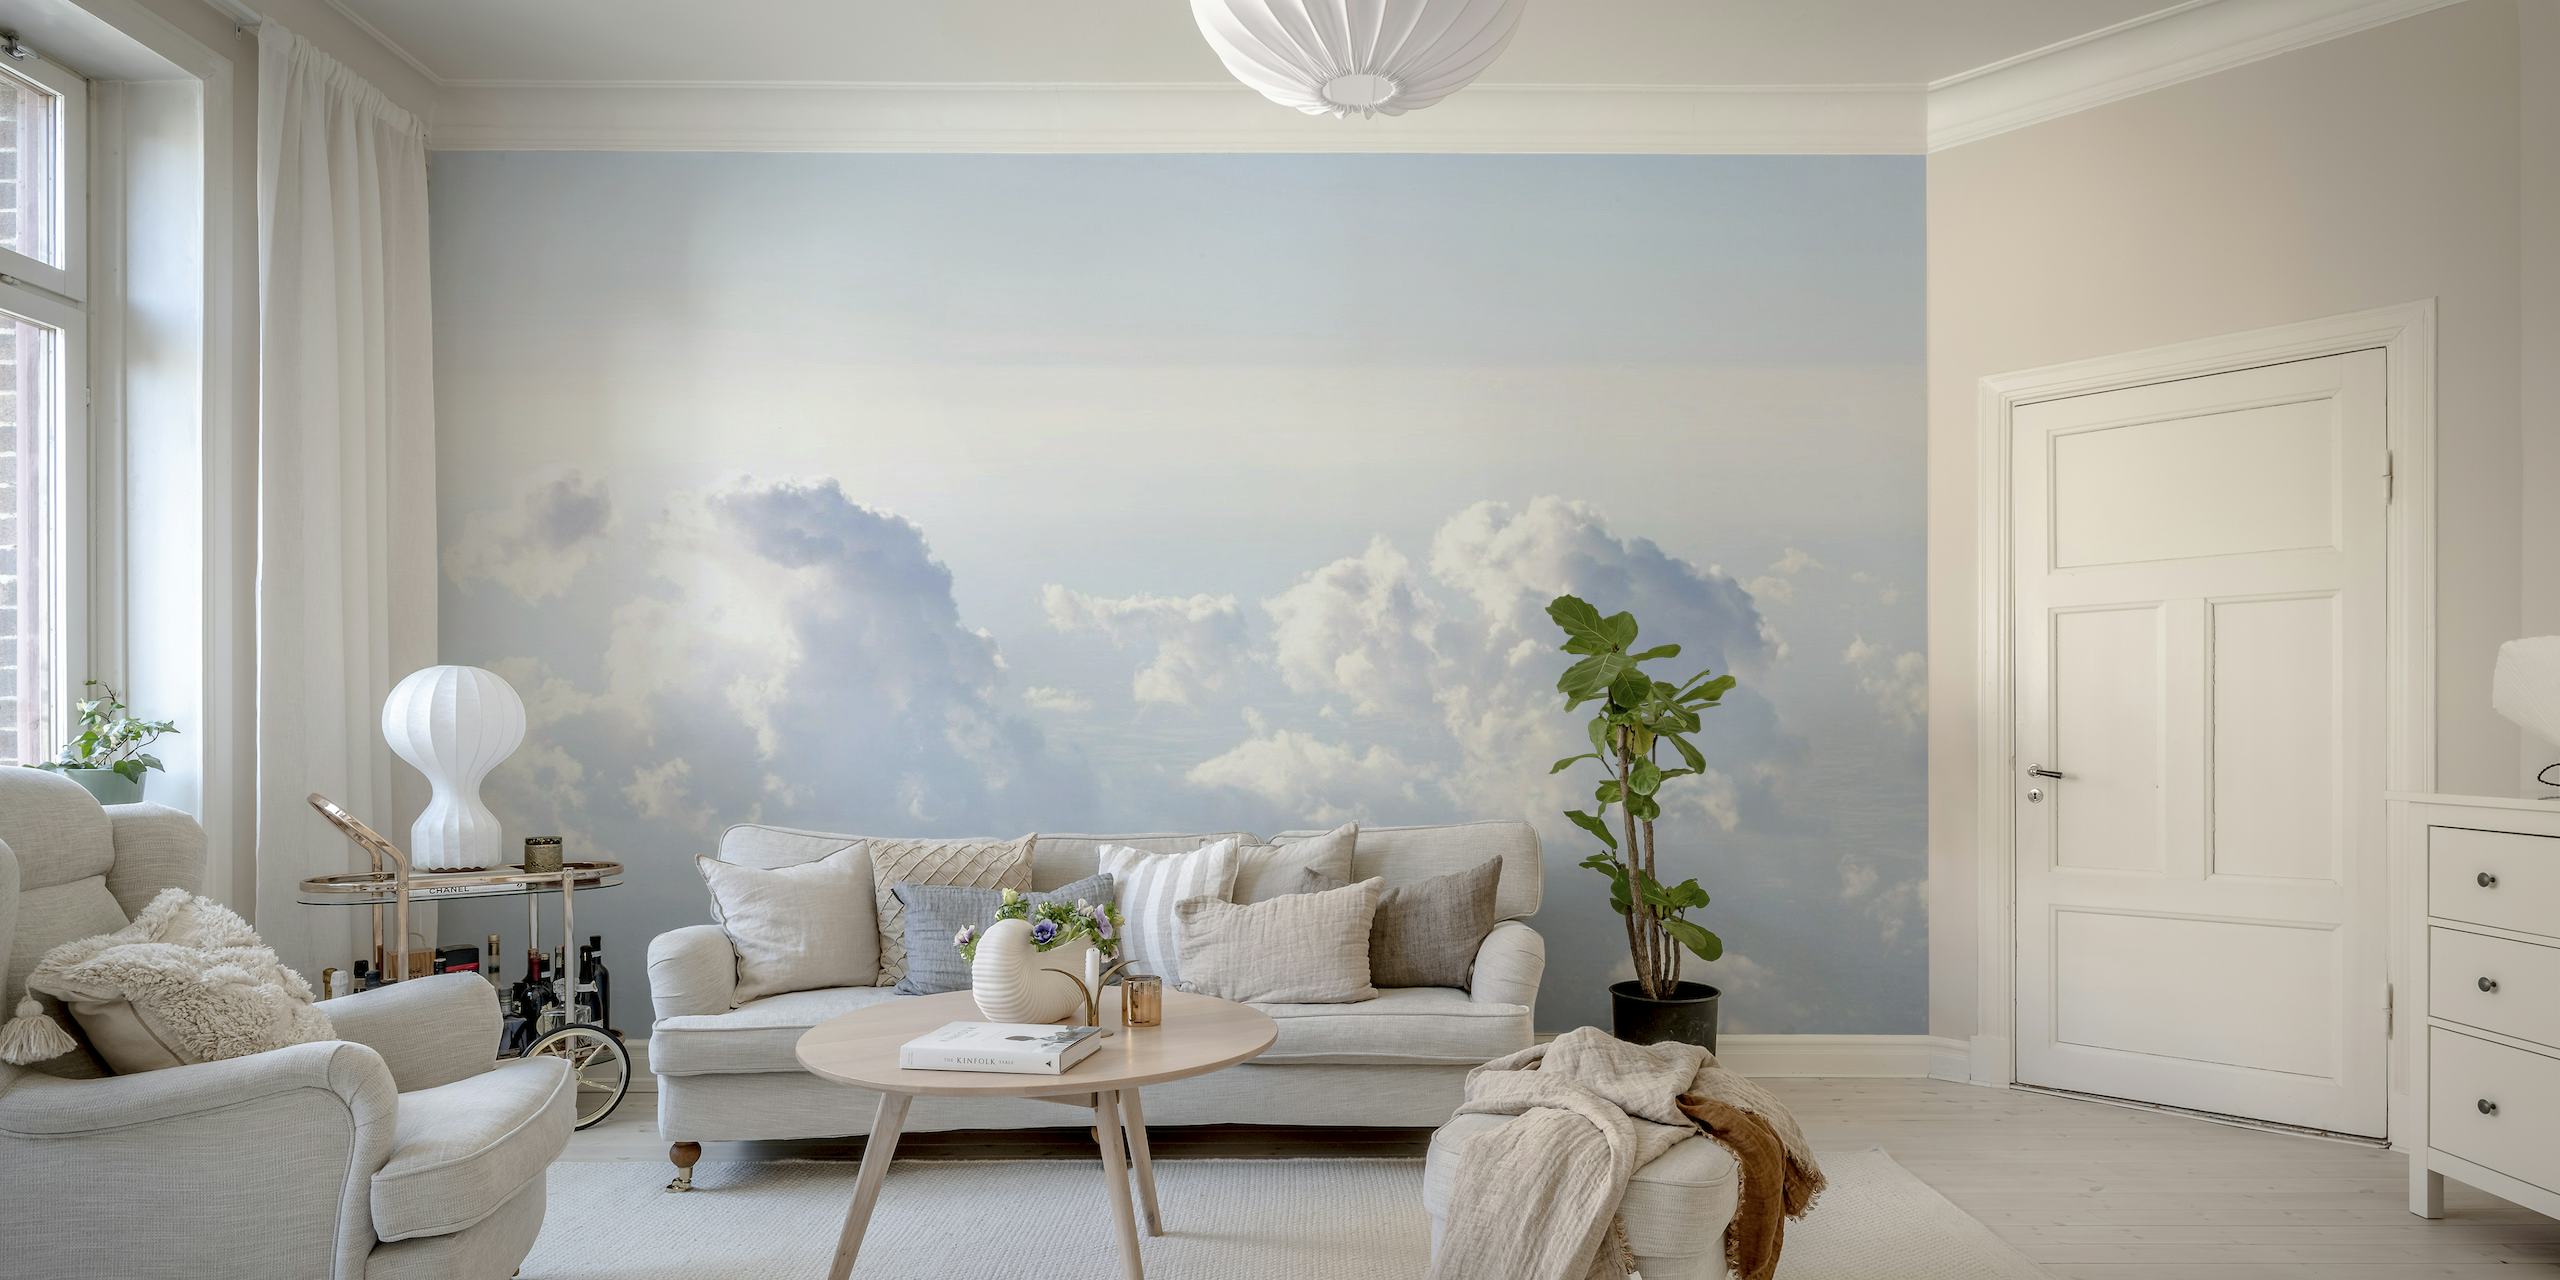 Une fresque murale représentant un ciel serein rempli de nuages avec des tons bleus doux